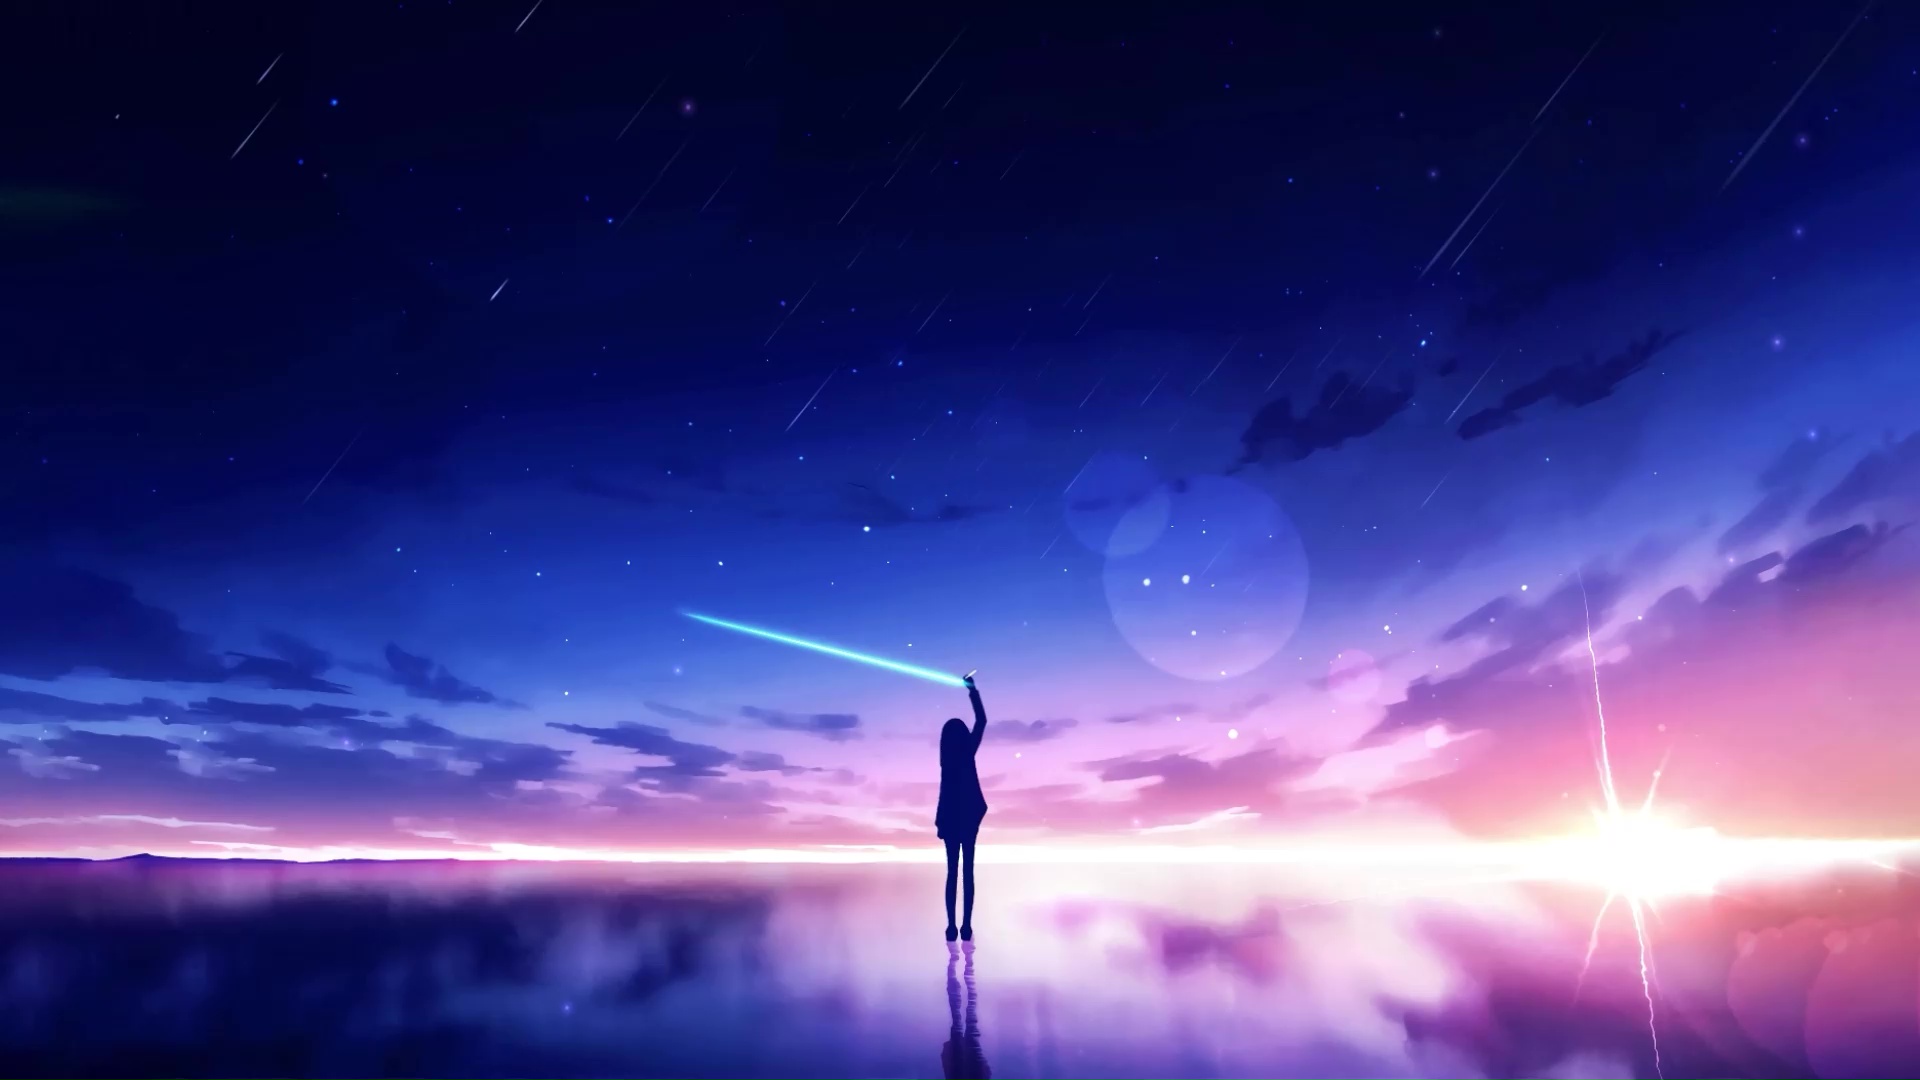 Anime Girl Drawing Shooting Stars Live Wallpaper